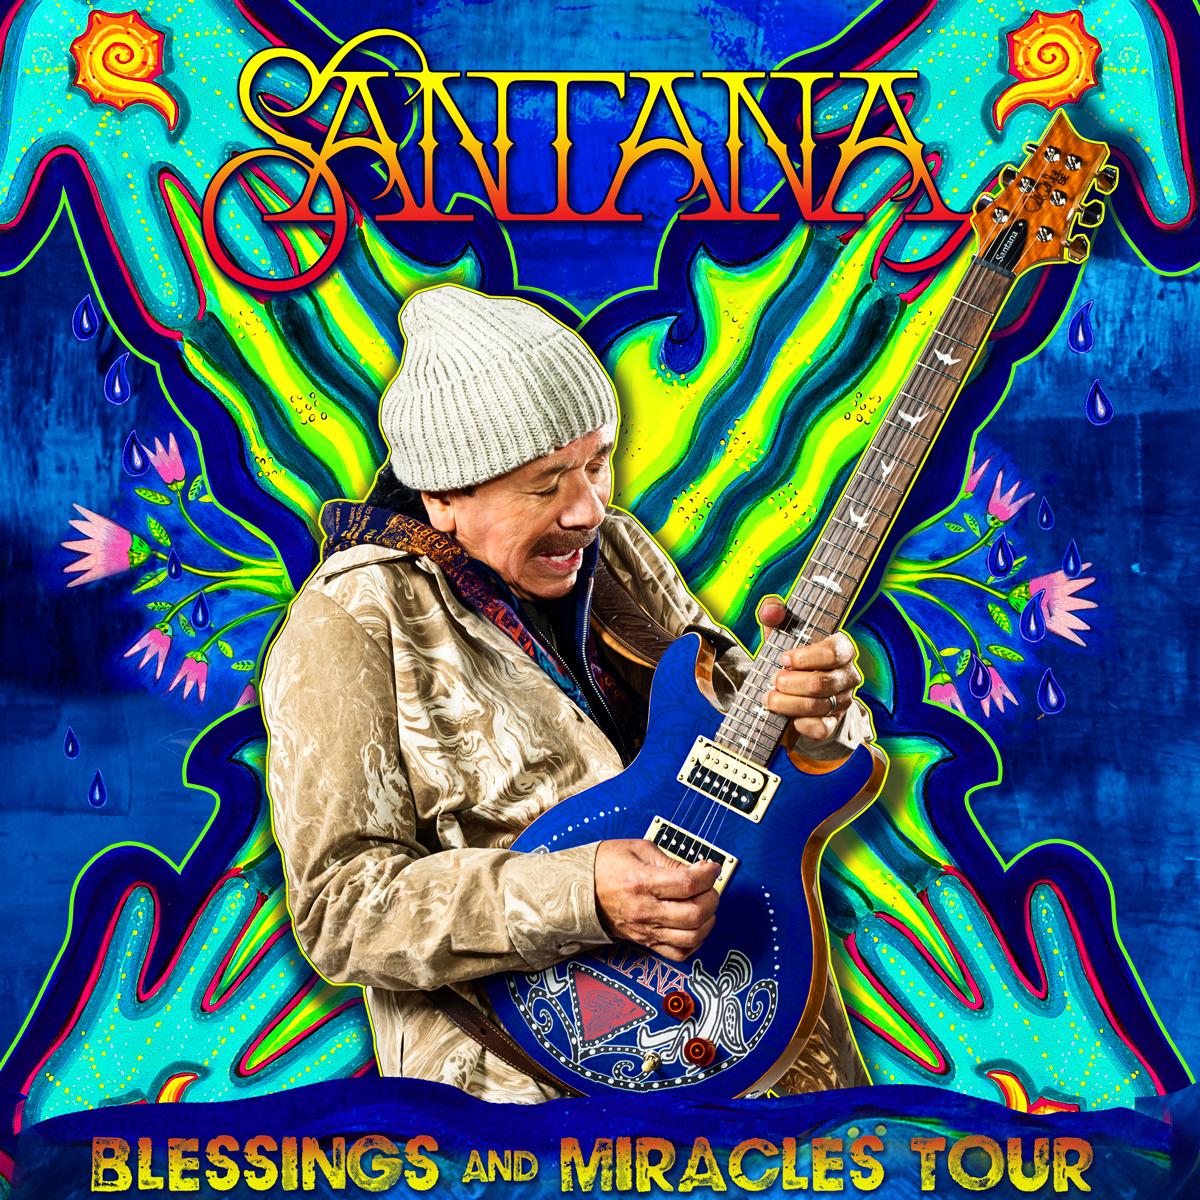 Santana calendar event 2021